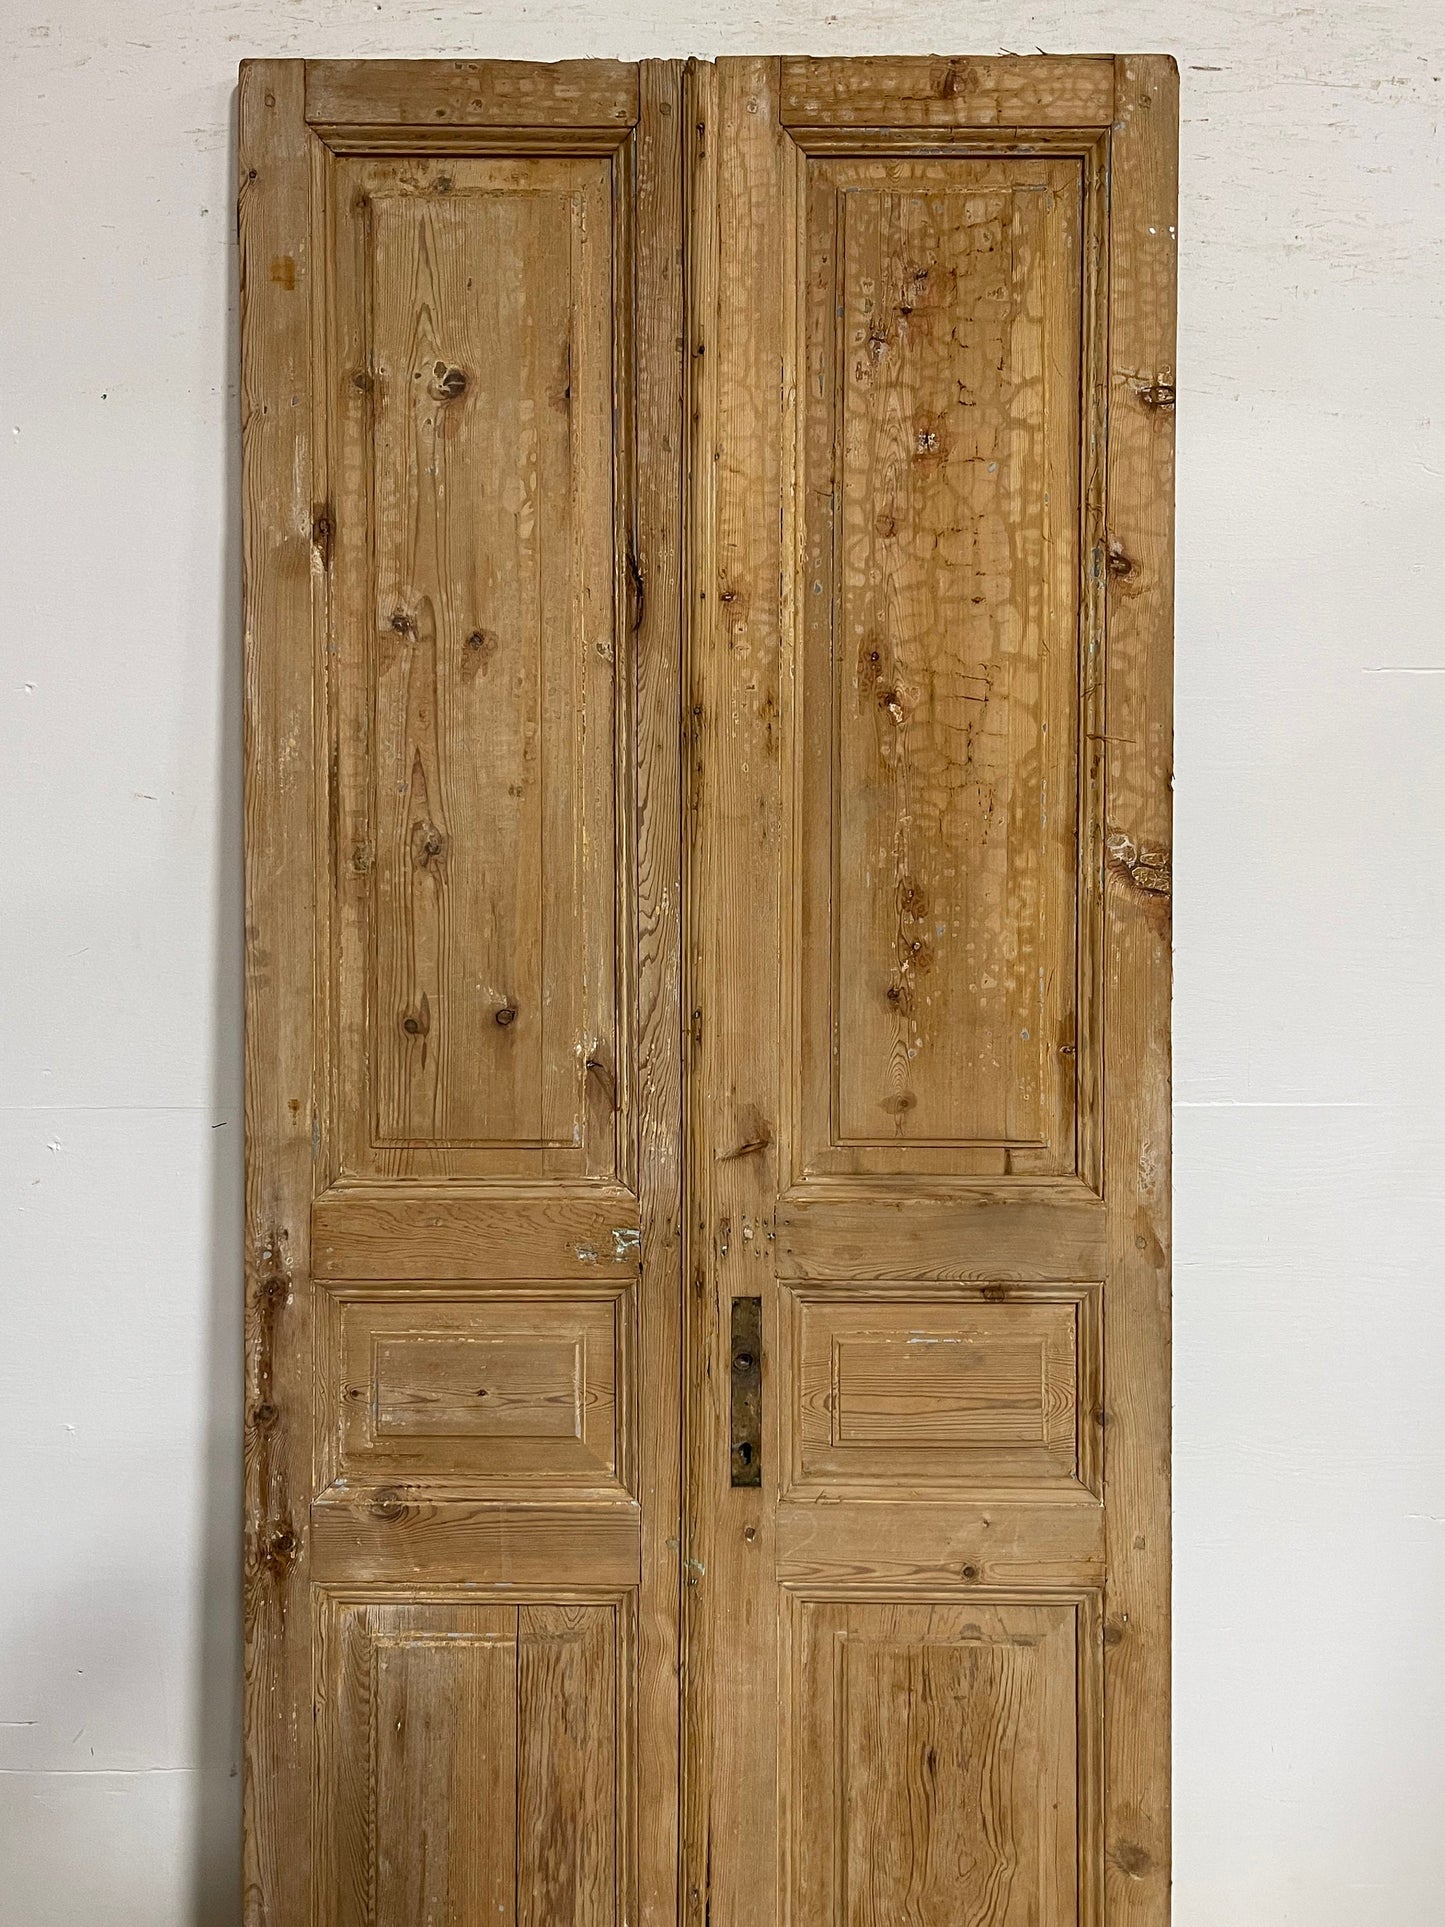 Antique French panel doors (92x38) I109s